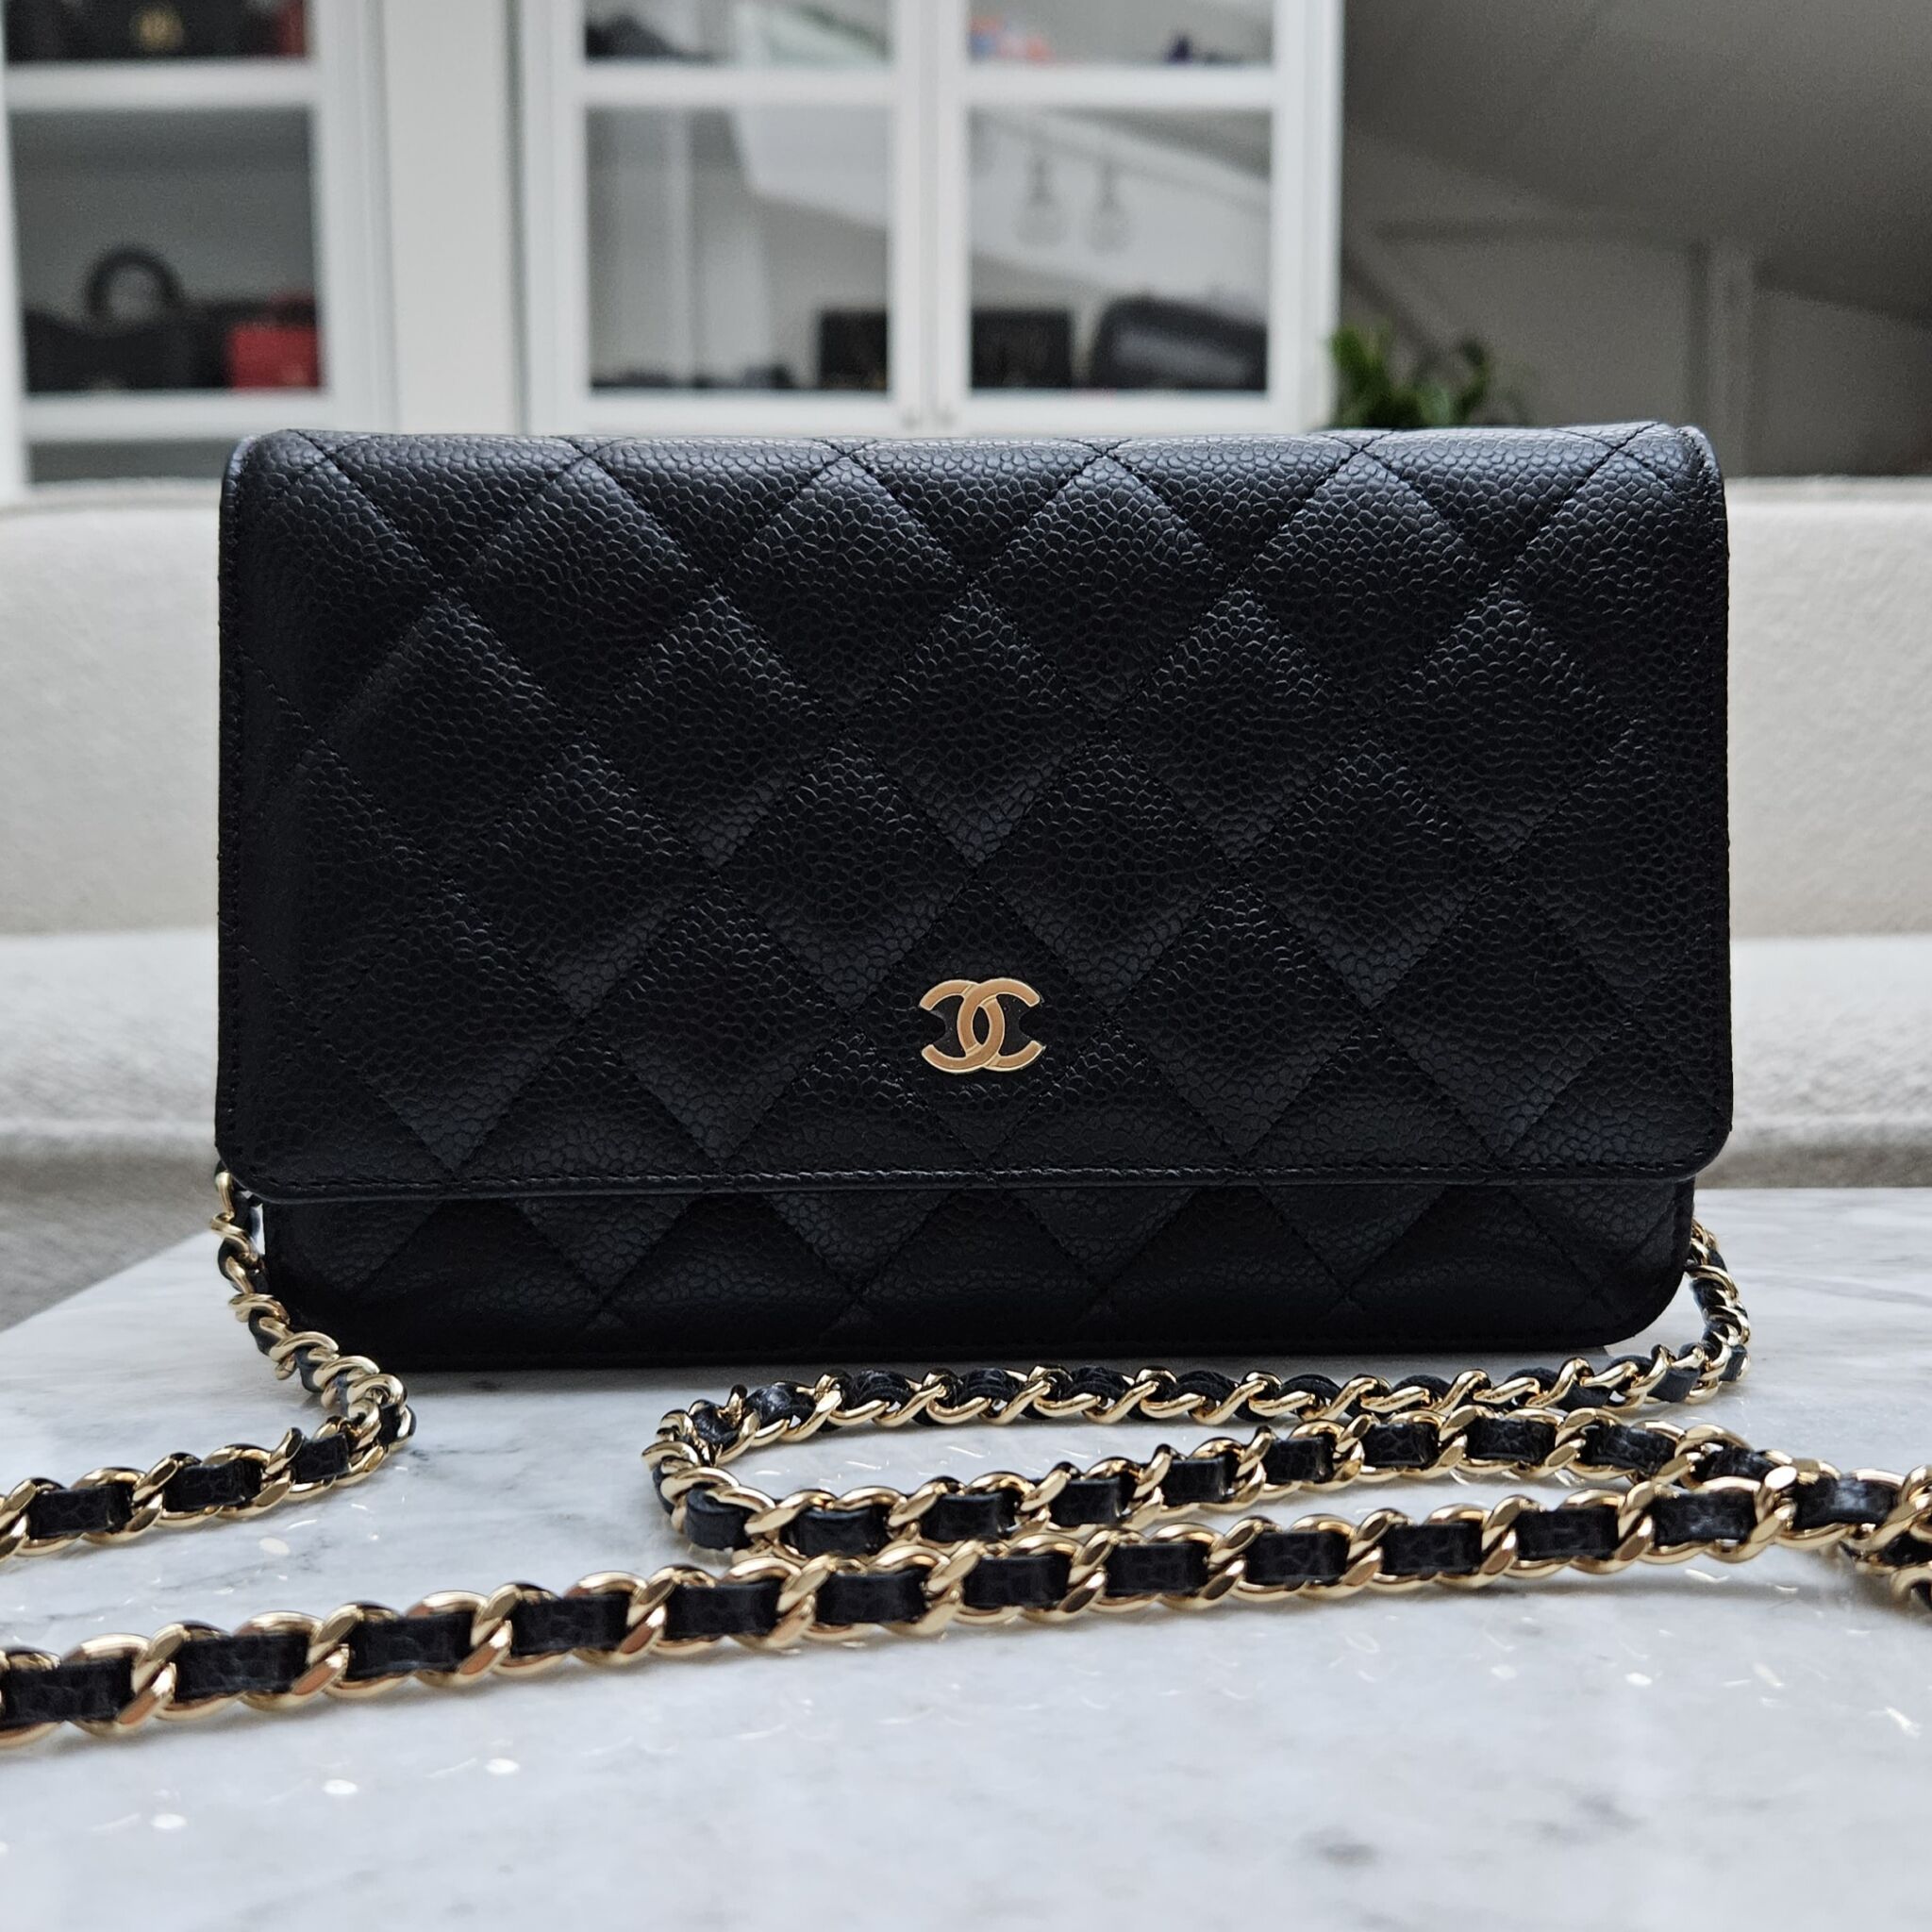 Chanel WOC, Caviar, Black SHW - Laulay Luxury